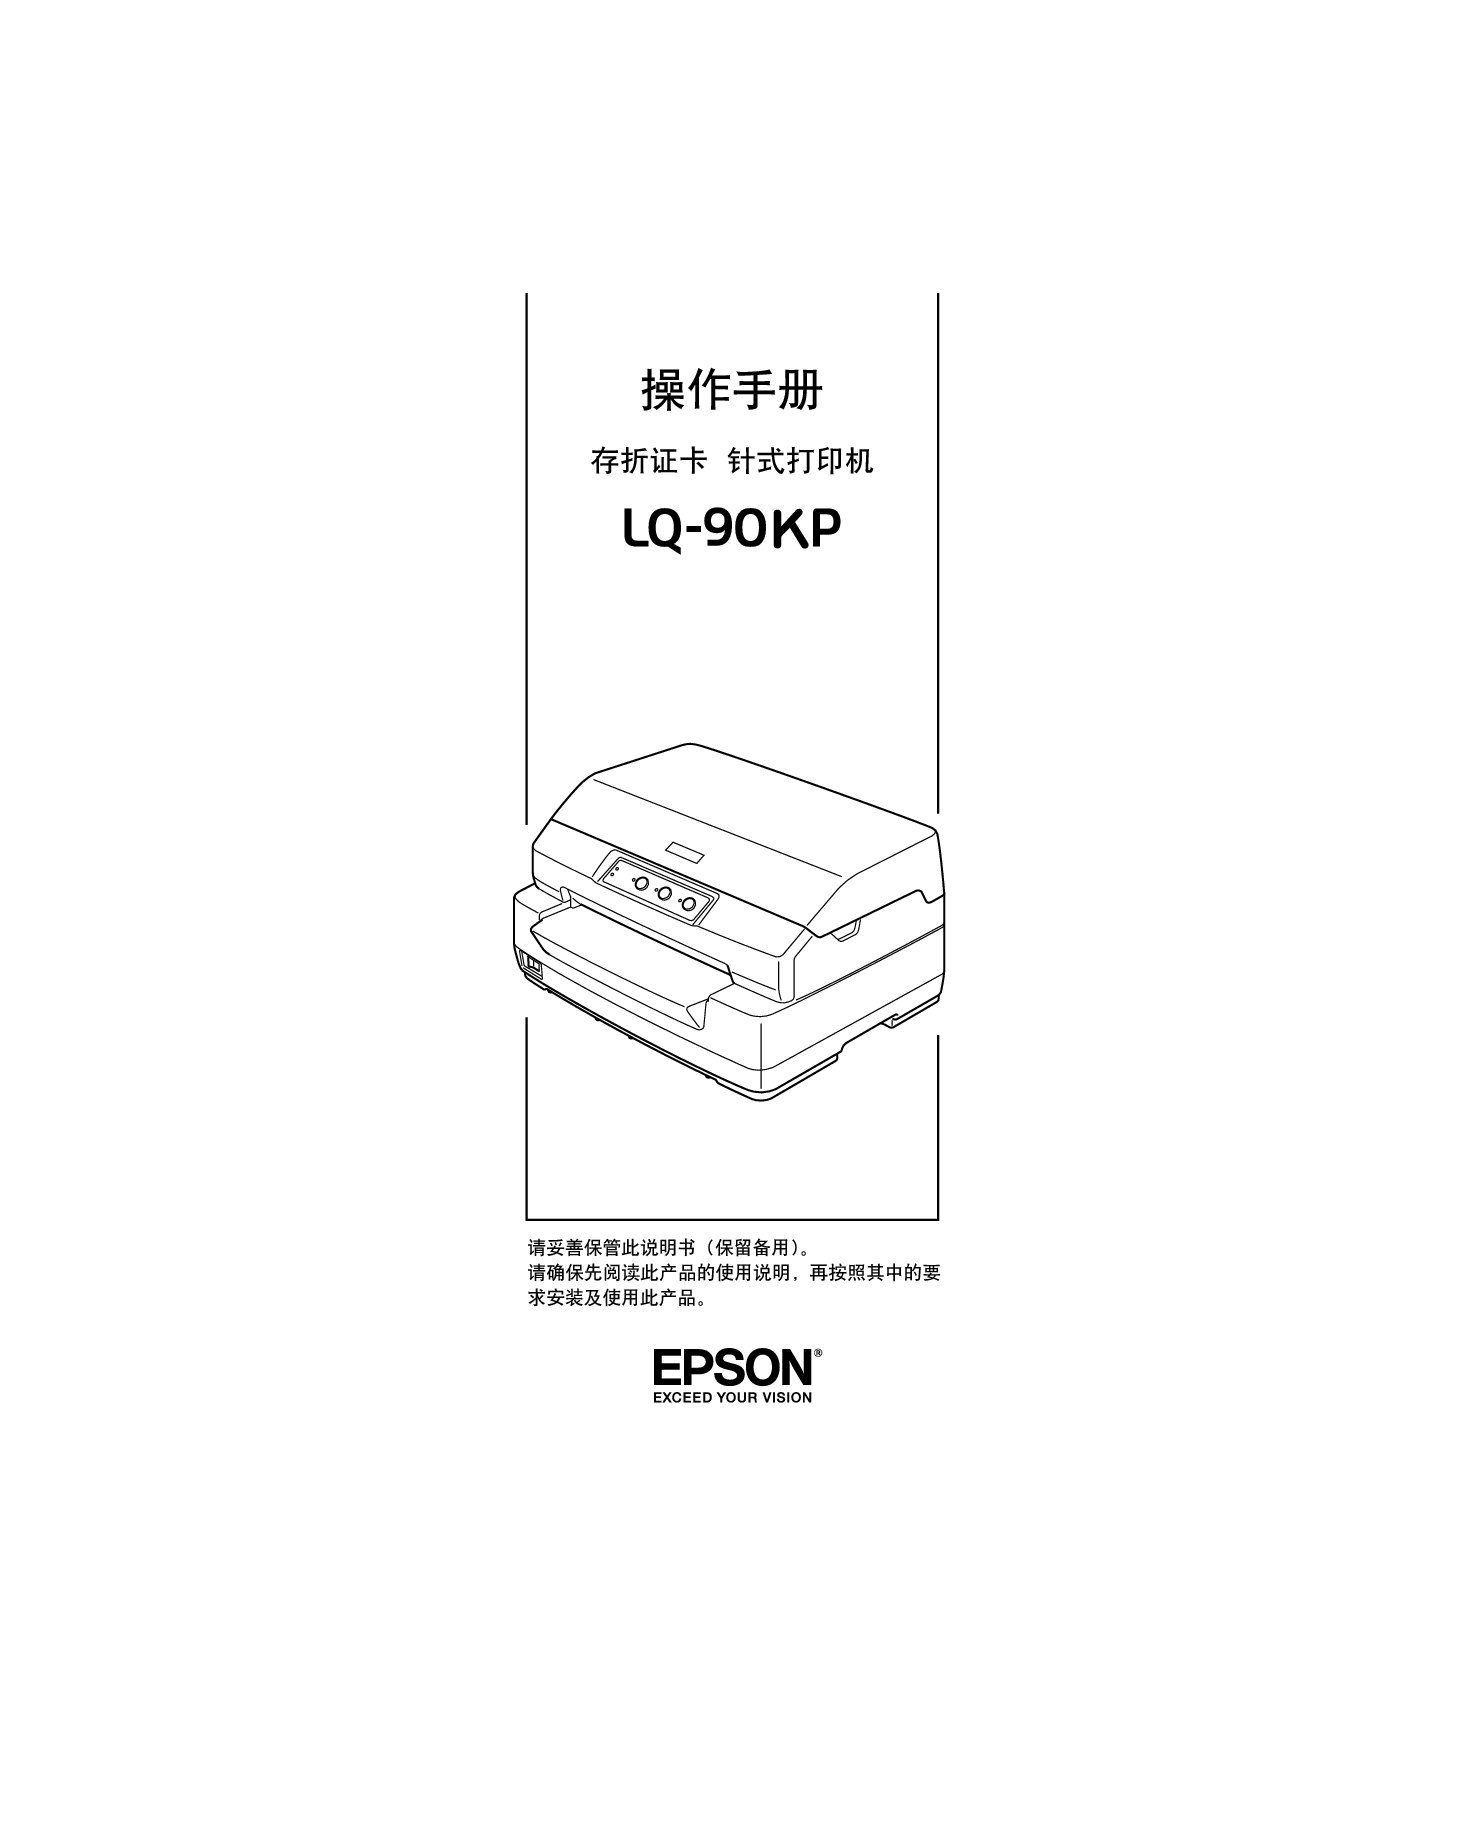 爱普生 Epson LQ-90KP 操作手册 封面